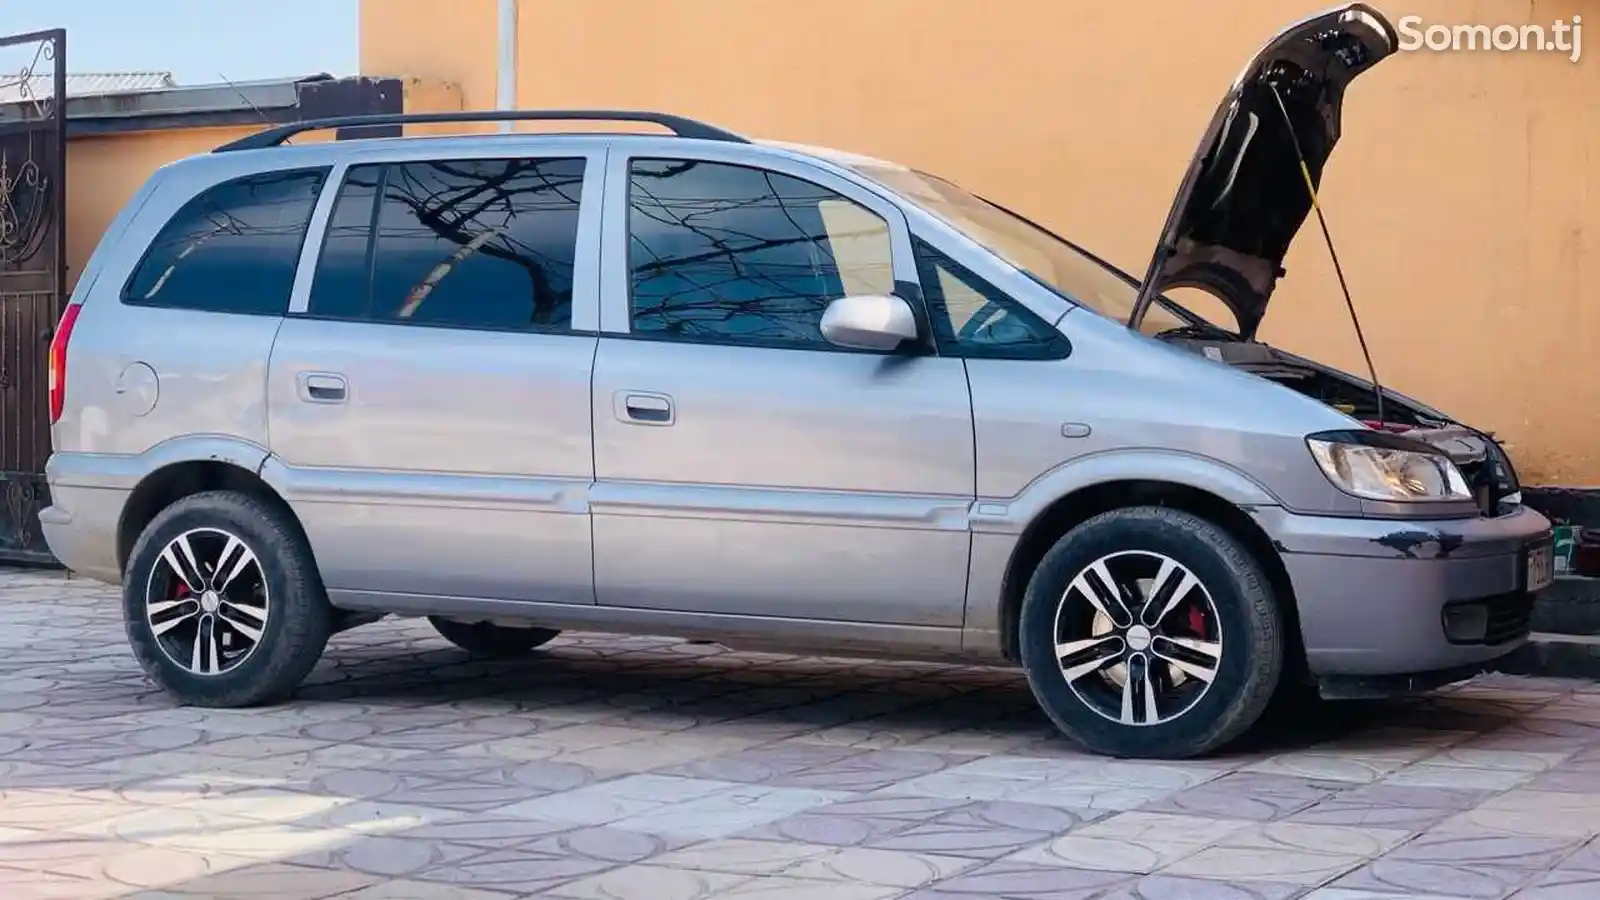 Opel Zafira, 2002-2